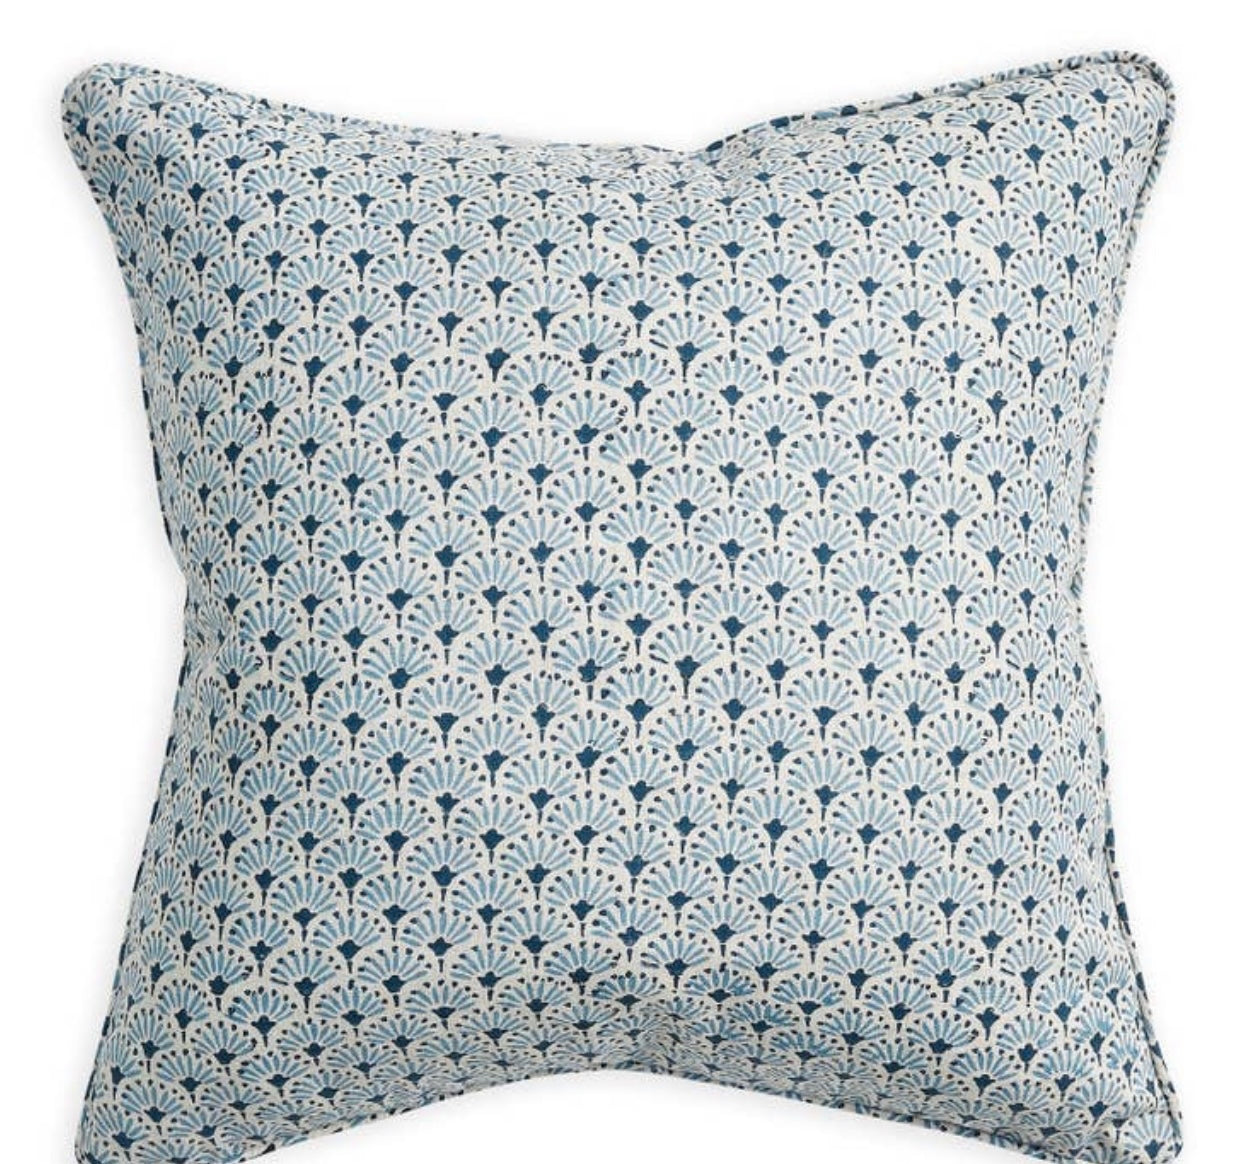 Walter G 22x22 Linen Block Print Pillows